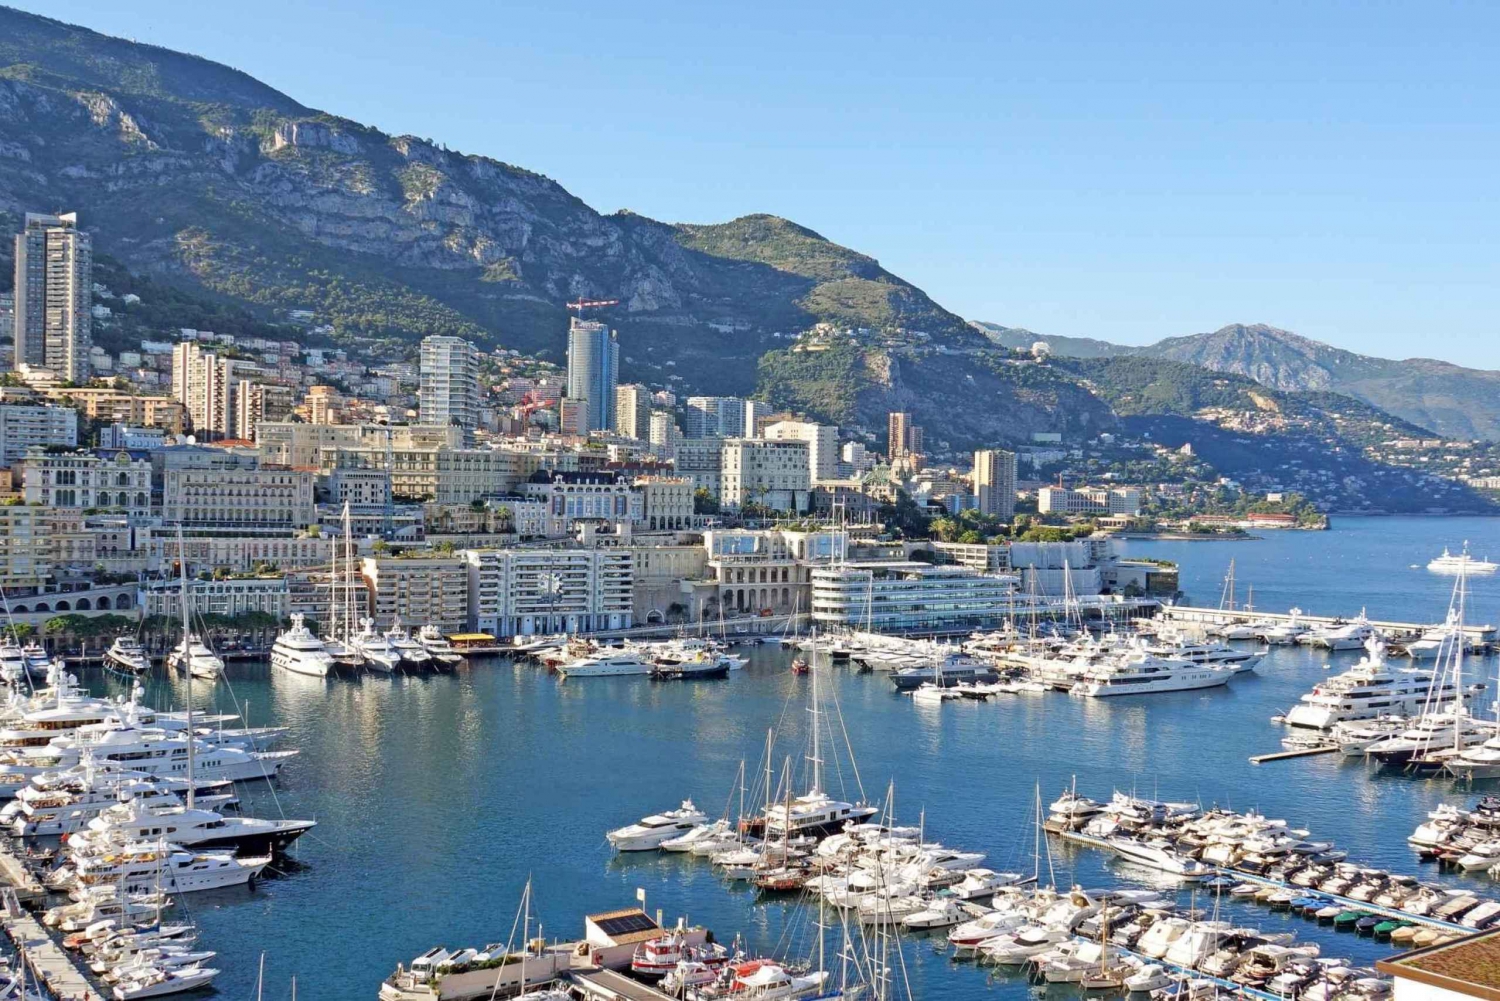 Excursão de 1 dia por Nice, Cannes, Antibes e Saint Tropez